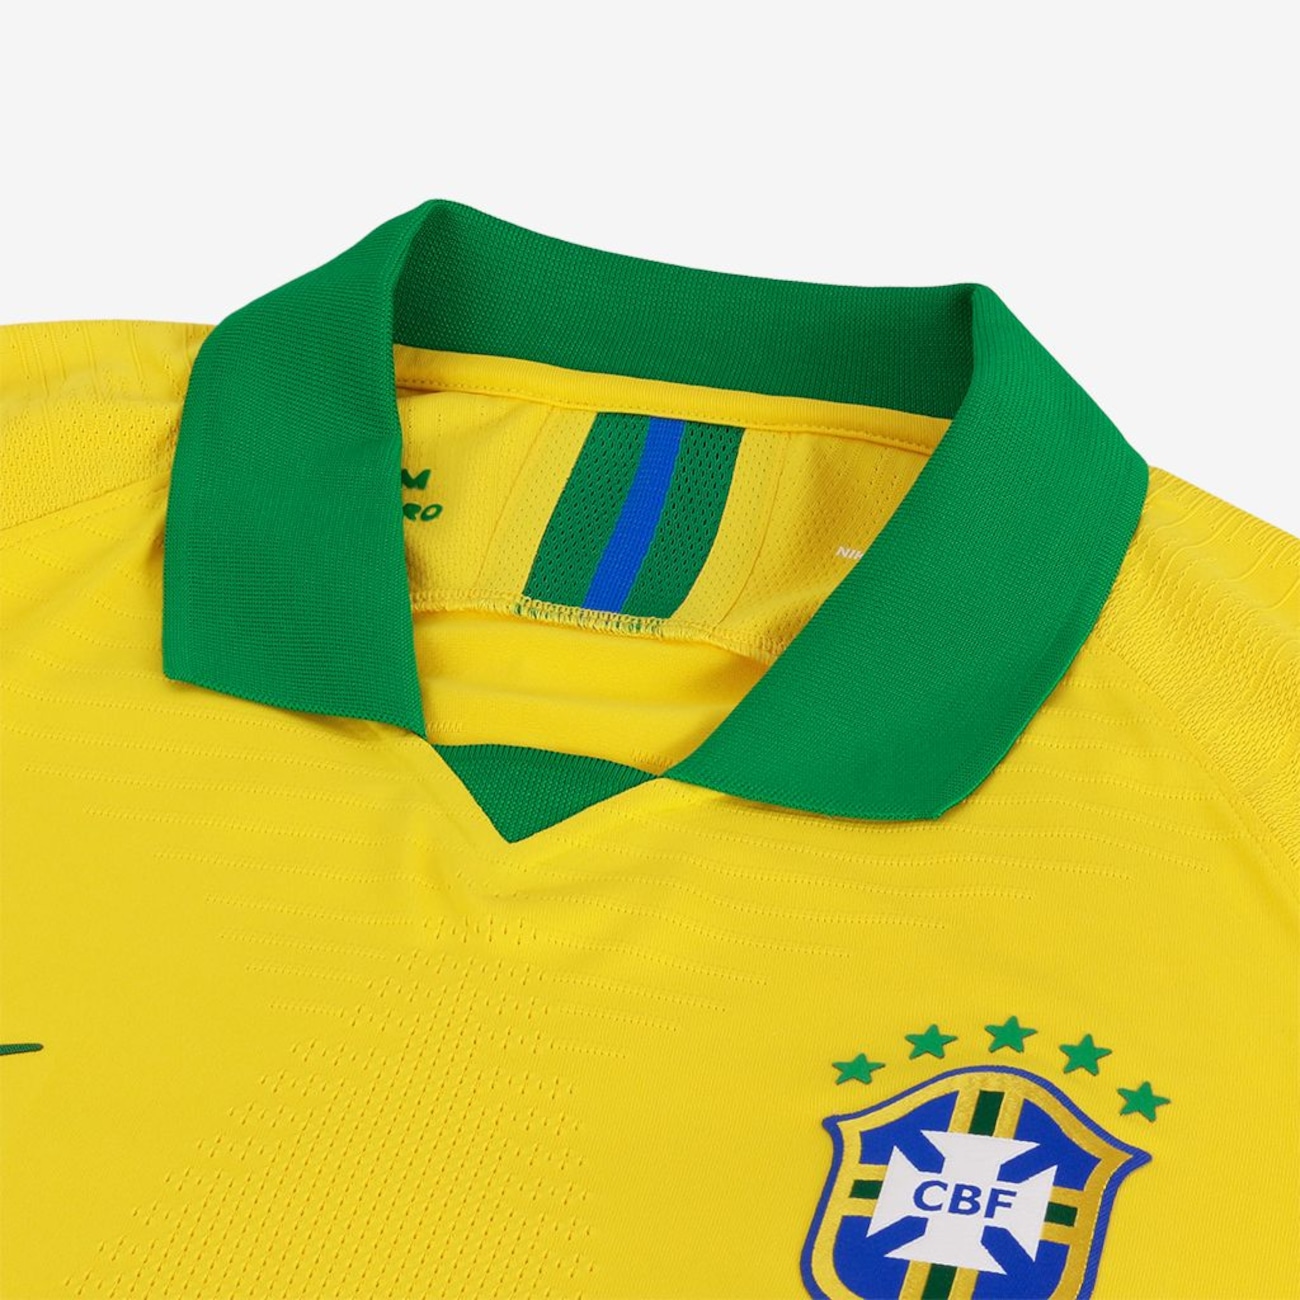 Camiseta Nike Brasil Comemorativa Copa América 2019/20 Jogador